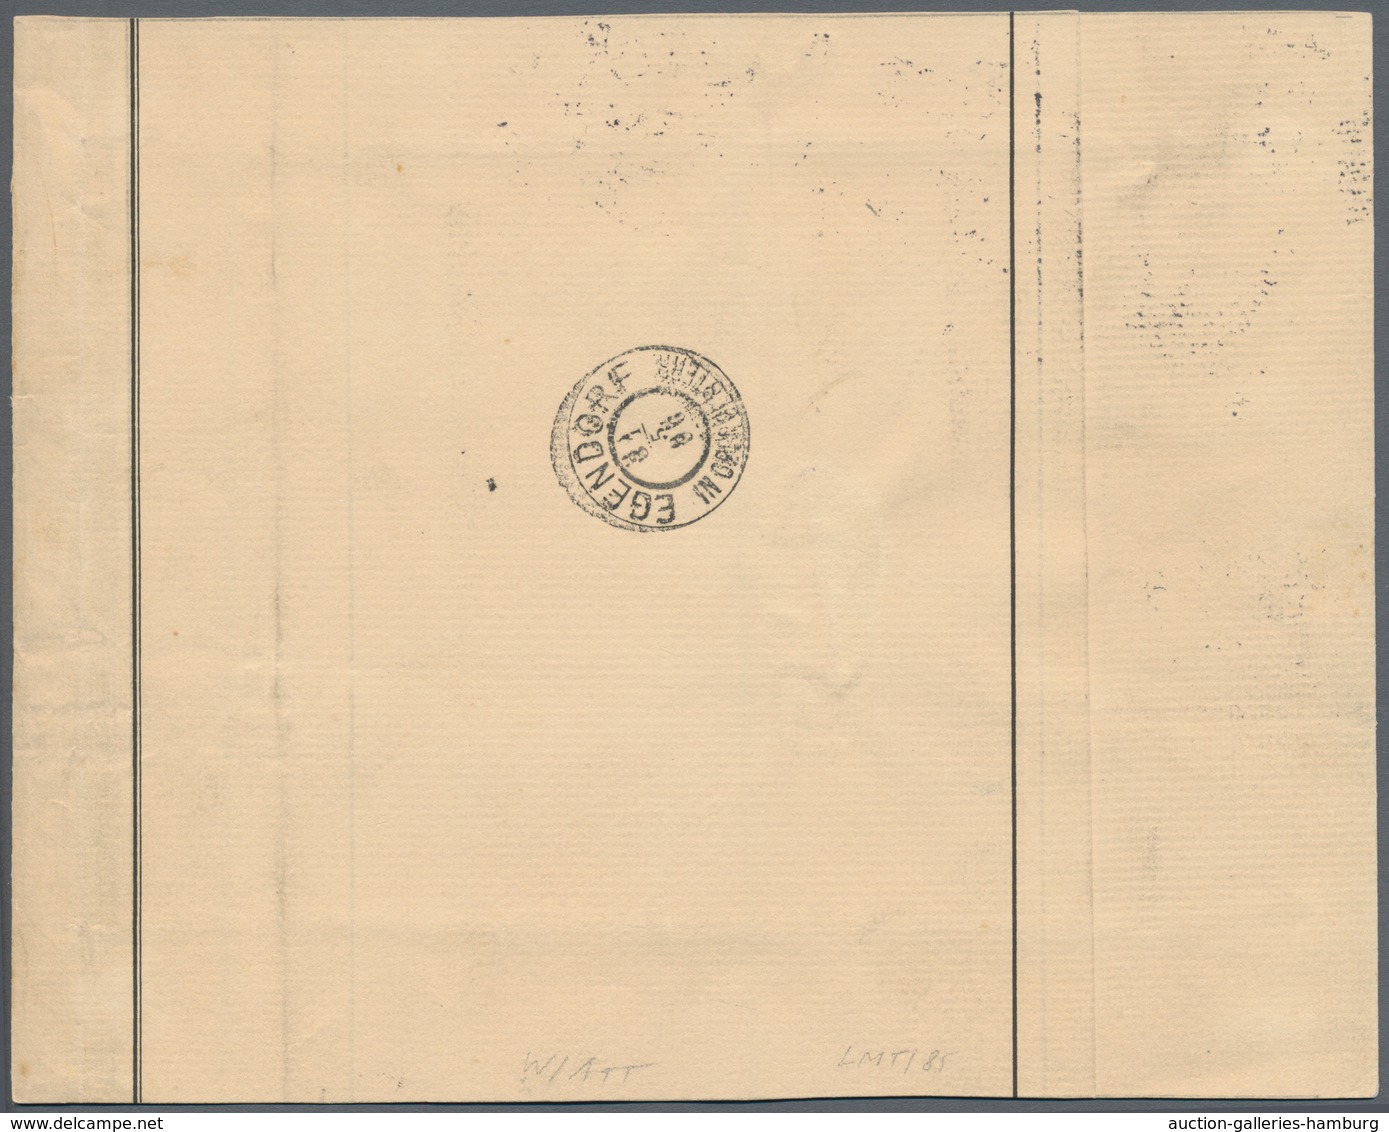 Österreich: 1867, (1 Kr) Merkurkopf Zeitungsmarke, Partie mit 4 verschiedenen Einzelfrankaturen auf